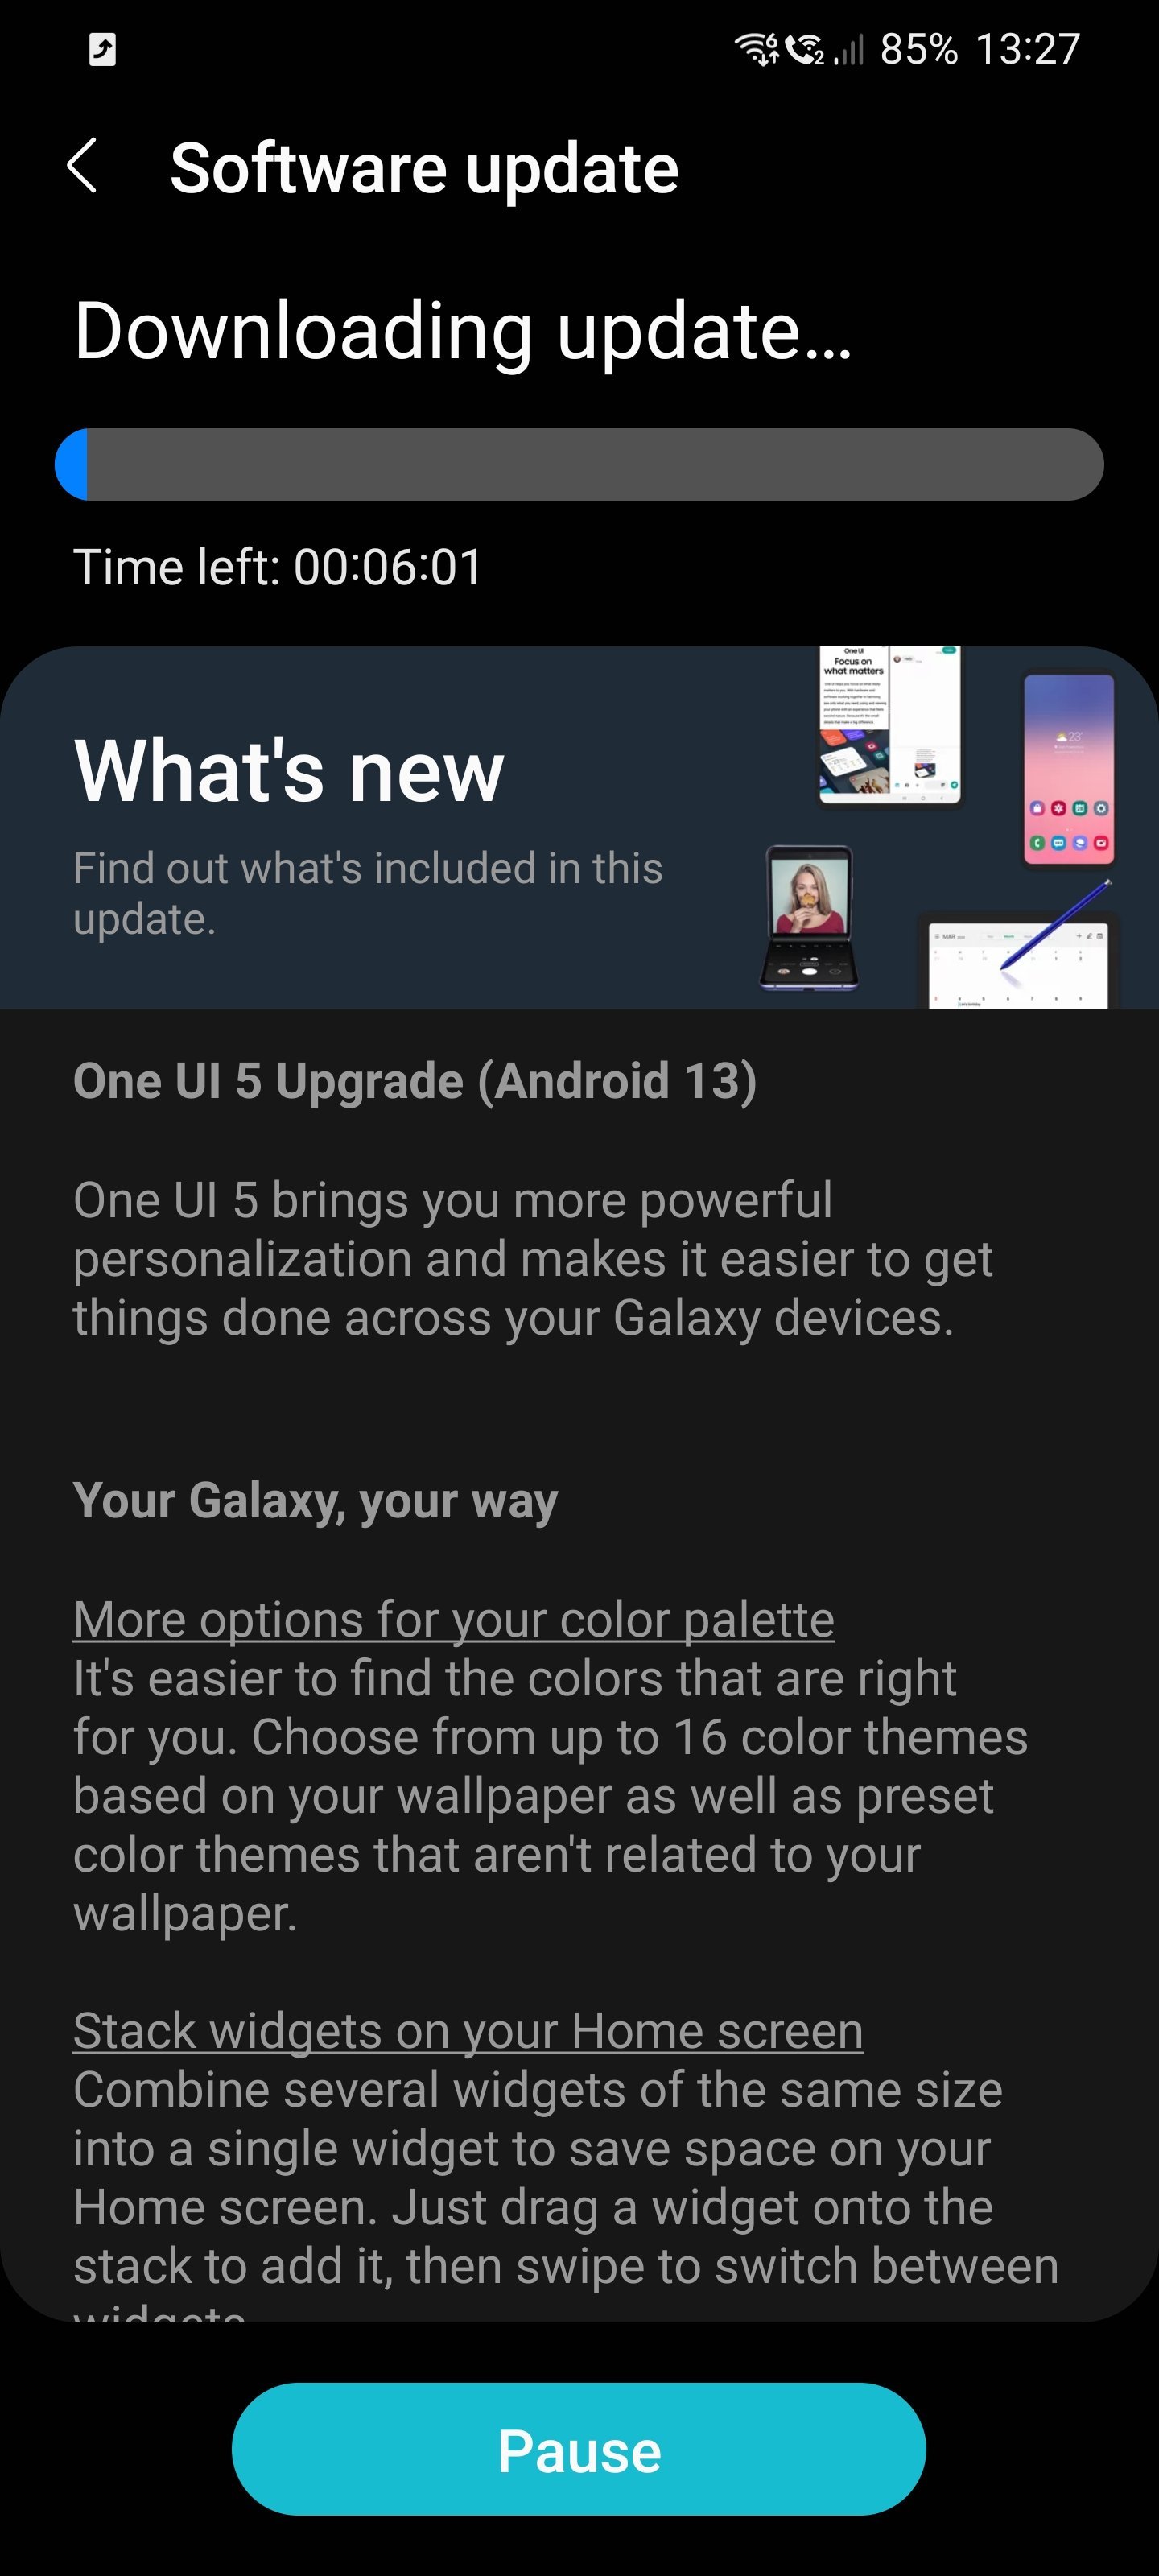 Samsung Galaxy S21 One UI 5.0 Beta Update Changelog 2